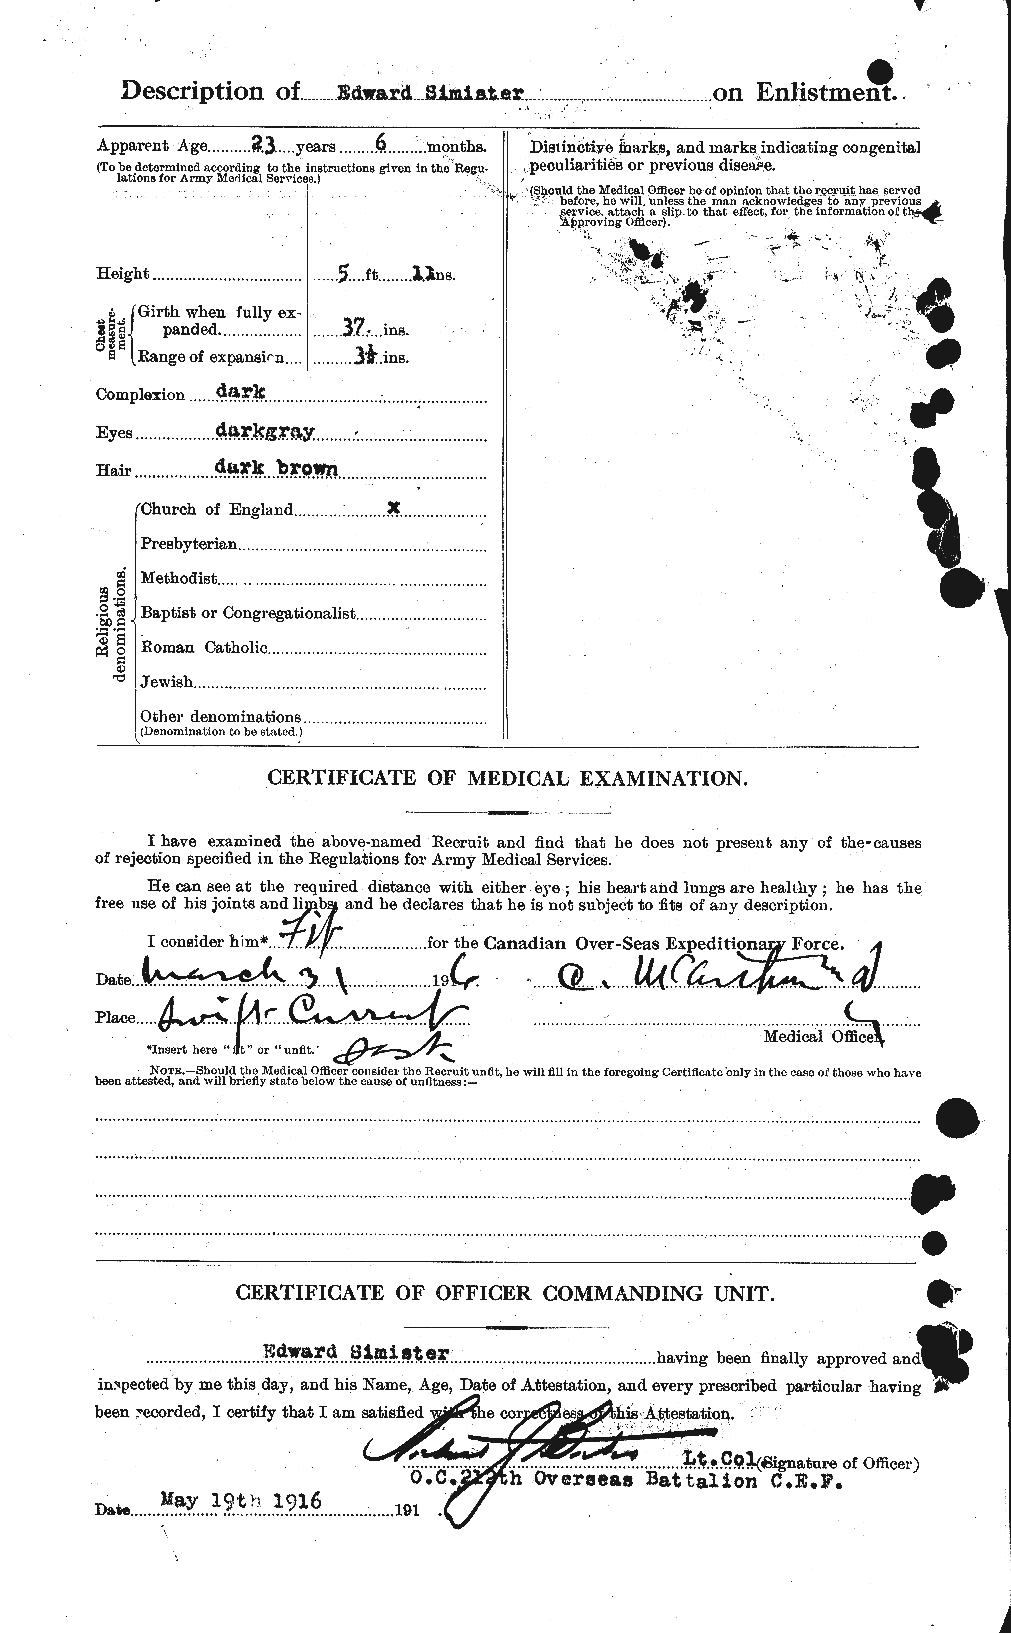 Dossiers du Personnel de la Première Guerre mondiale - CEC 100256b